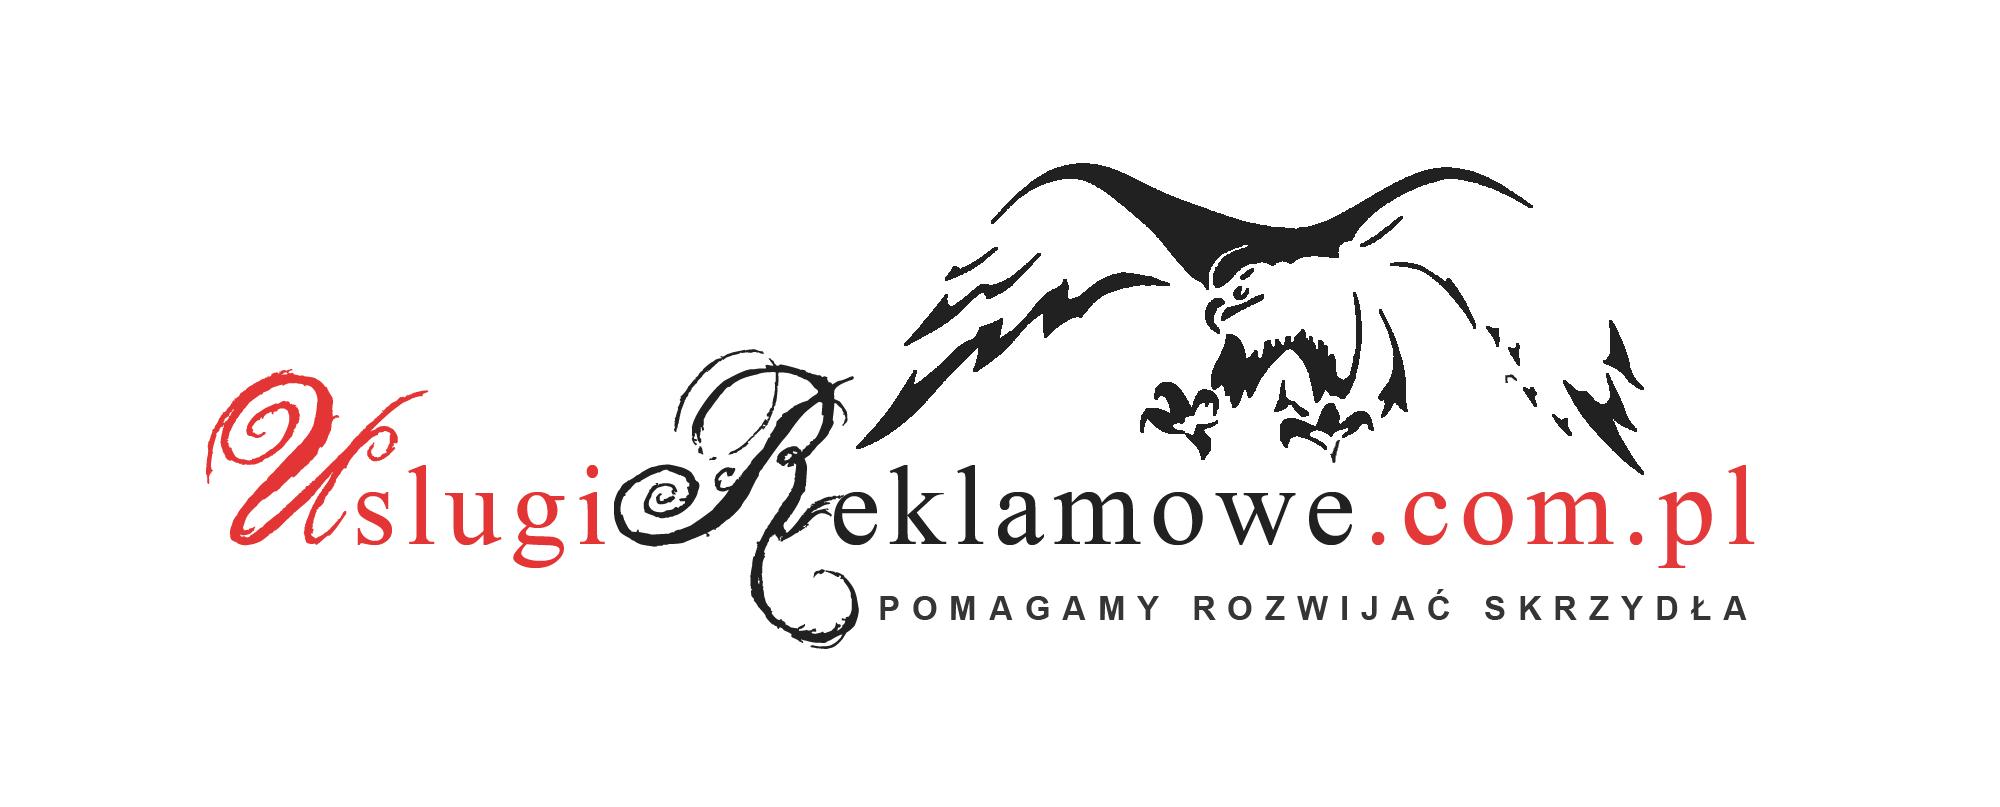 Usługi reklamowe, www.UslugiReklamowe.com.pl , Warszawa, Wrocław, Poznań, Kraków, Łódz, Gdynia, mazowieckie